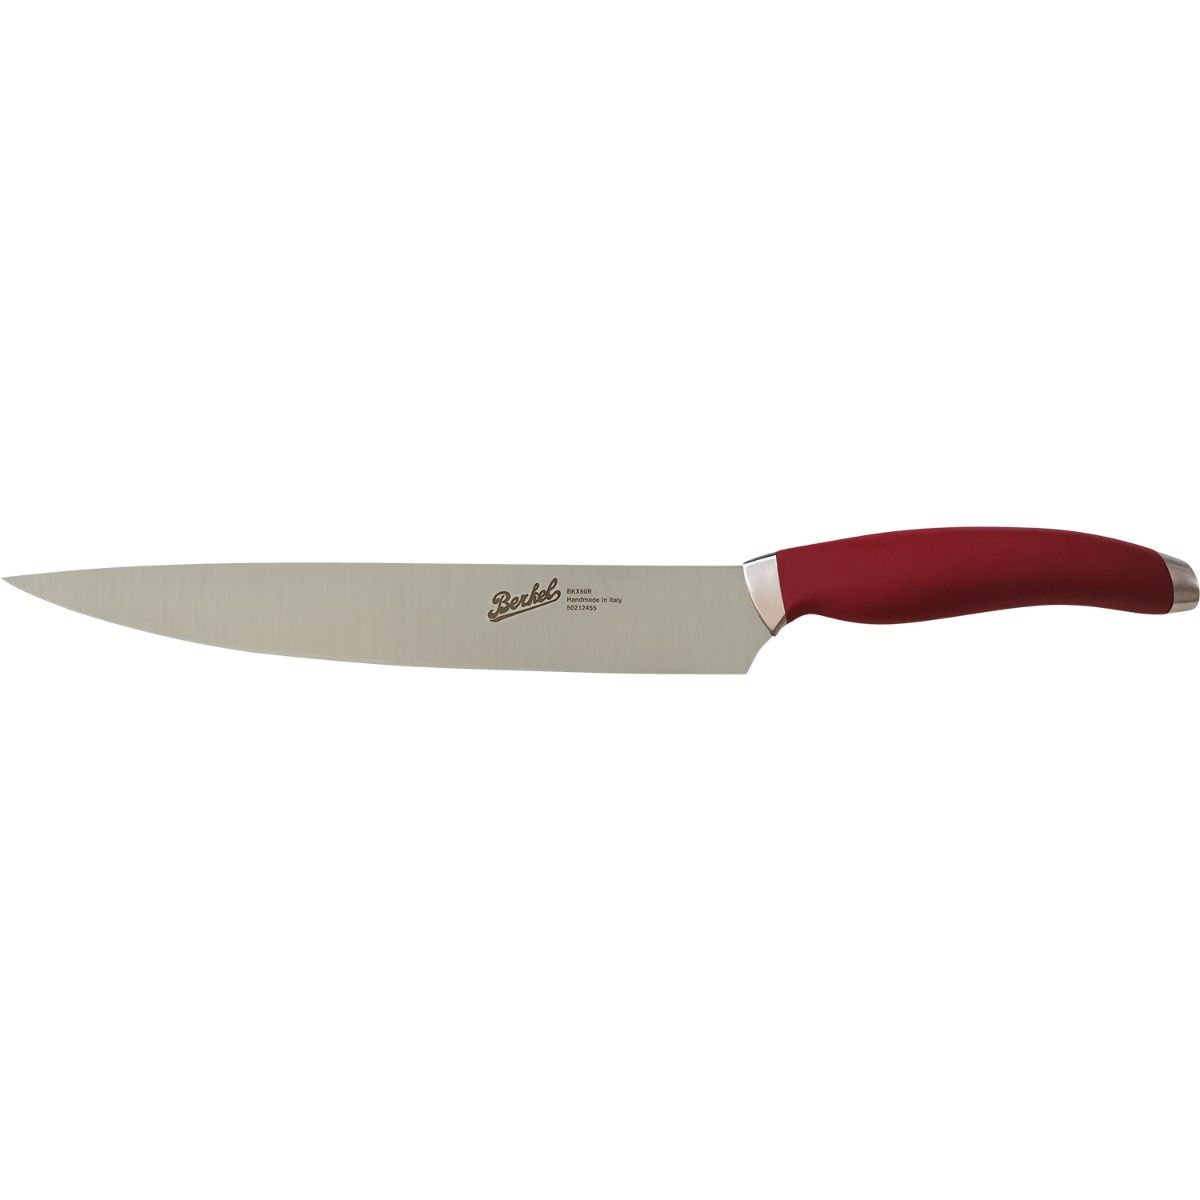 Fillet Knife 24 cm  Stainless Steel Berkel Teknica Handle Red Resin